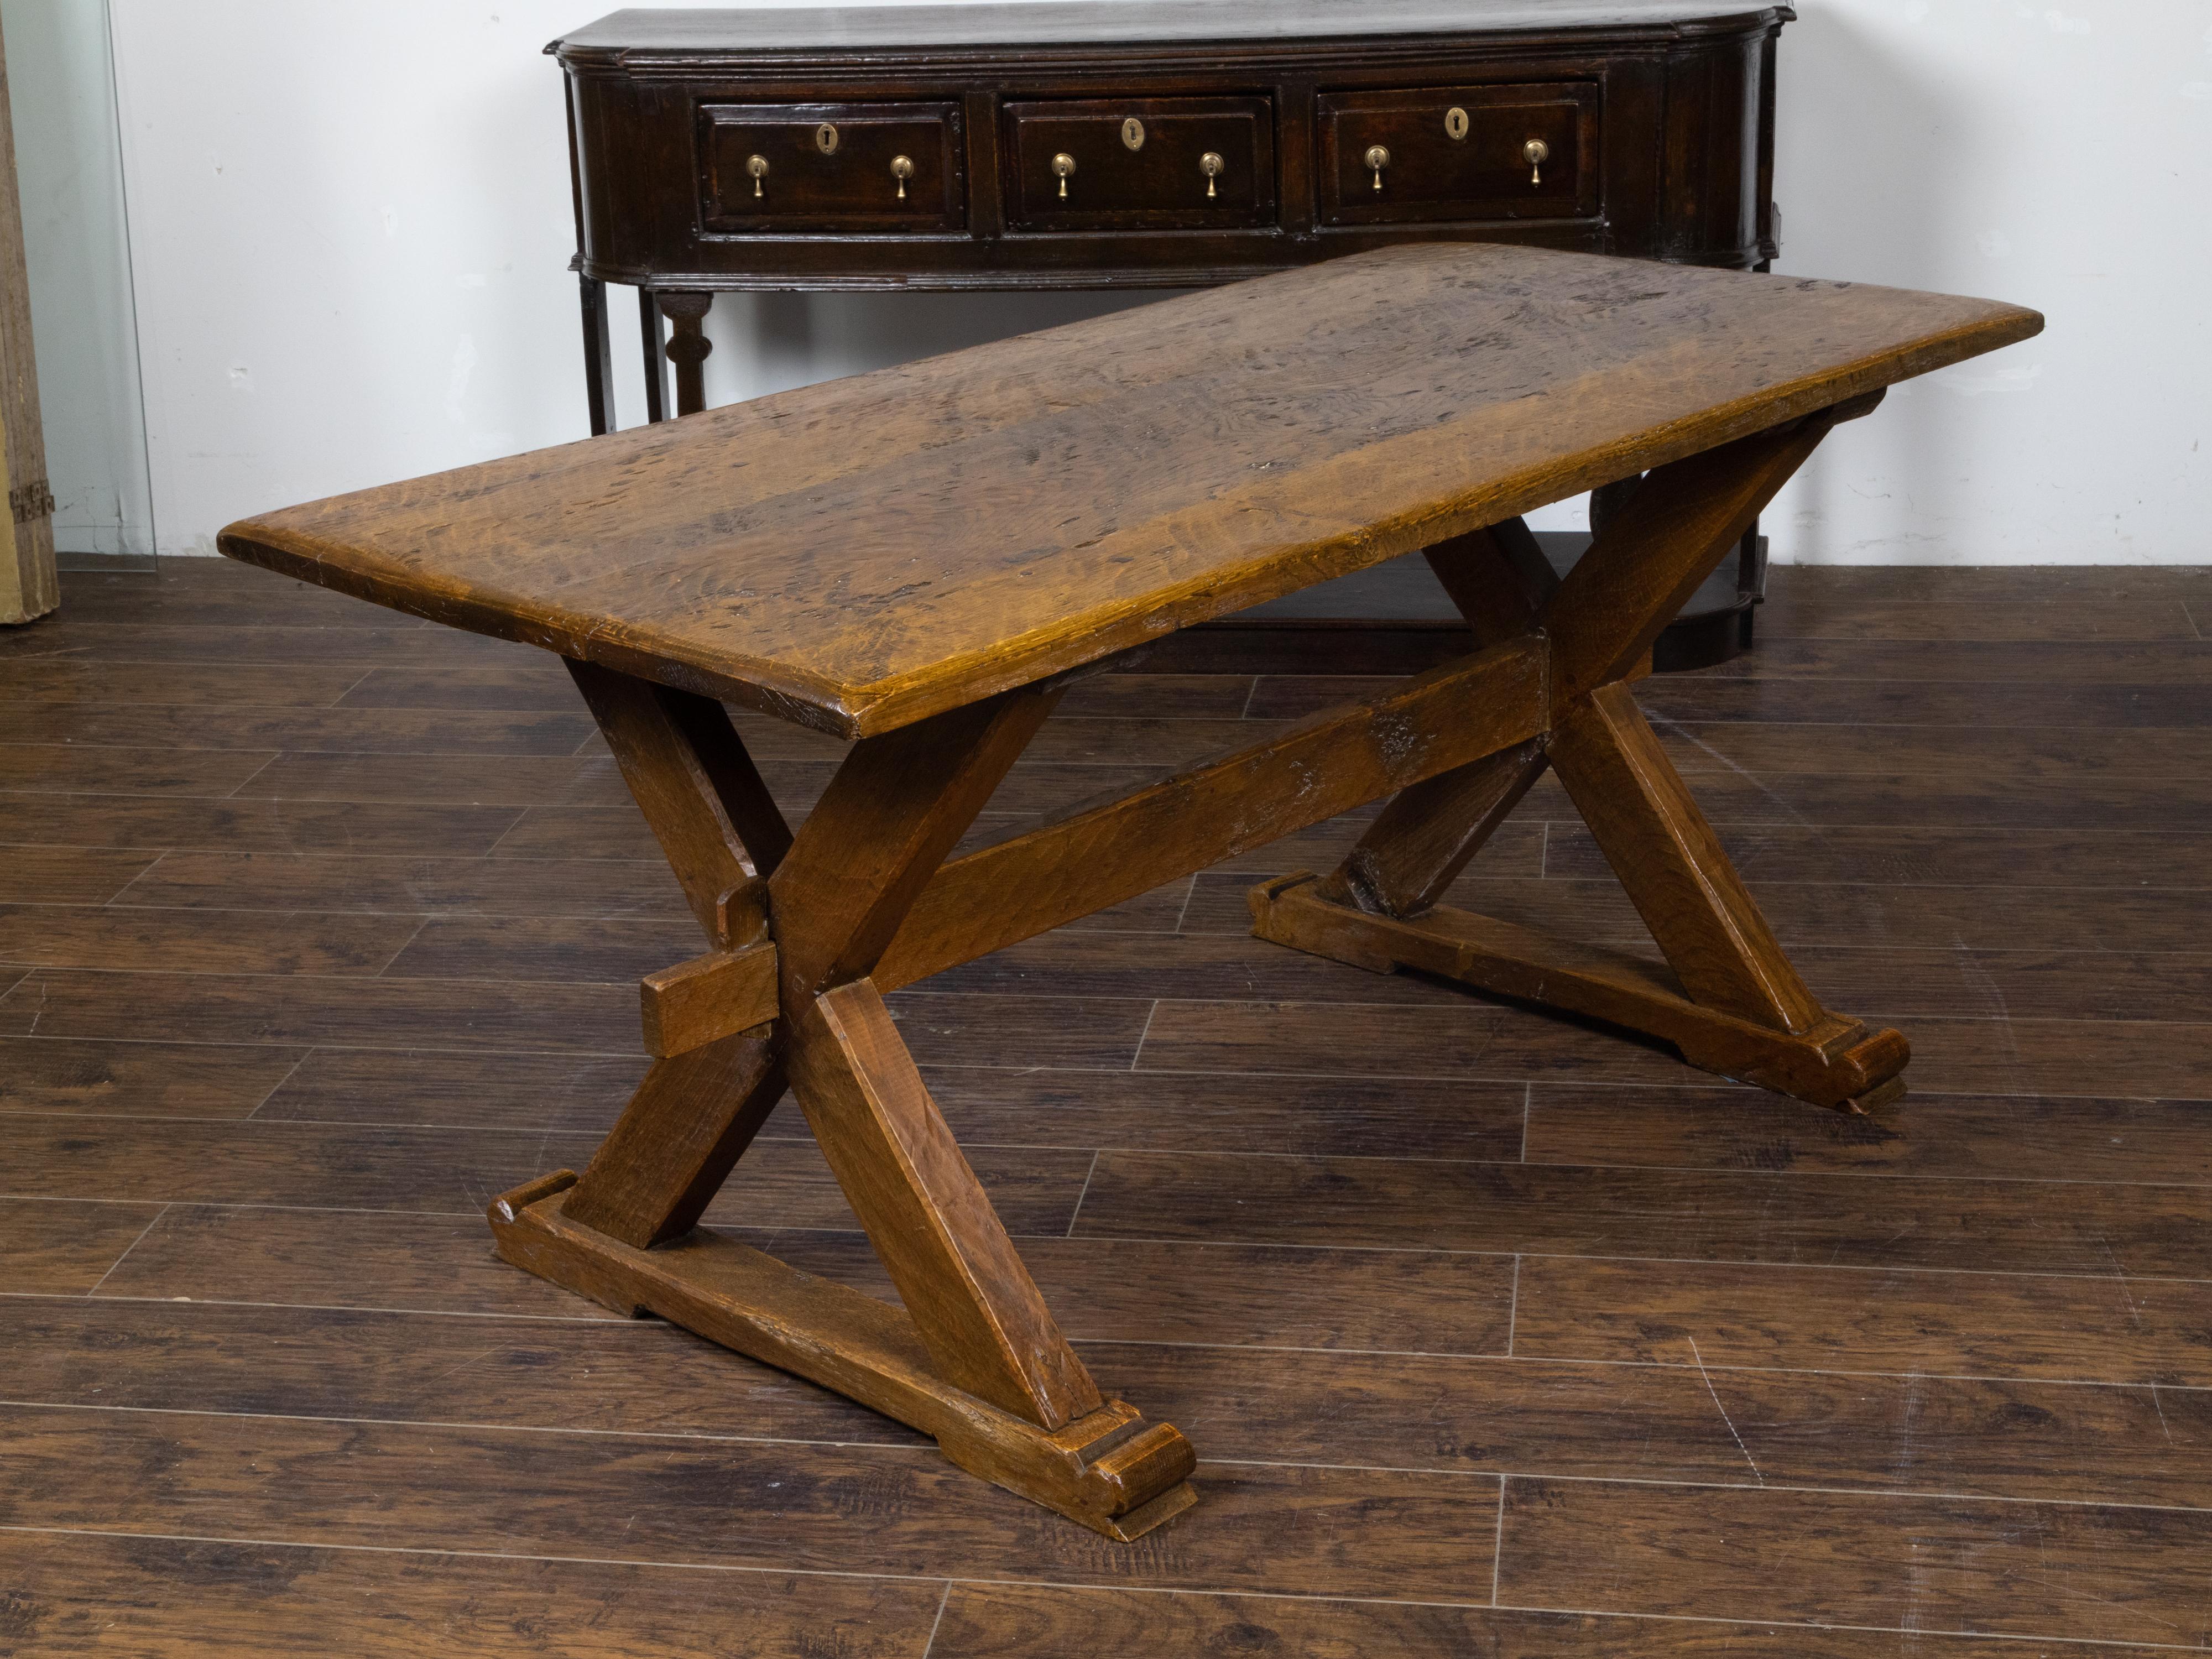 Table de ferme en chêne anglais du XIXe siècle, avec une double base en forme de X, une traverse simple et un grand caractère rustique. Créée en Angleterre au cours du XIXe siècle, cette table en chêne scié présente un plateau rectangulaire en